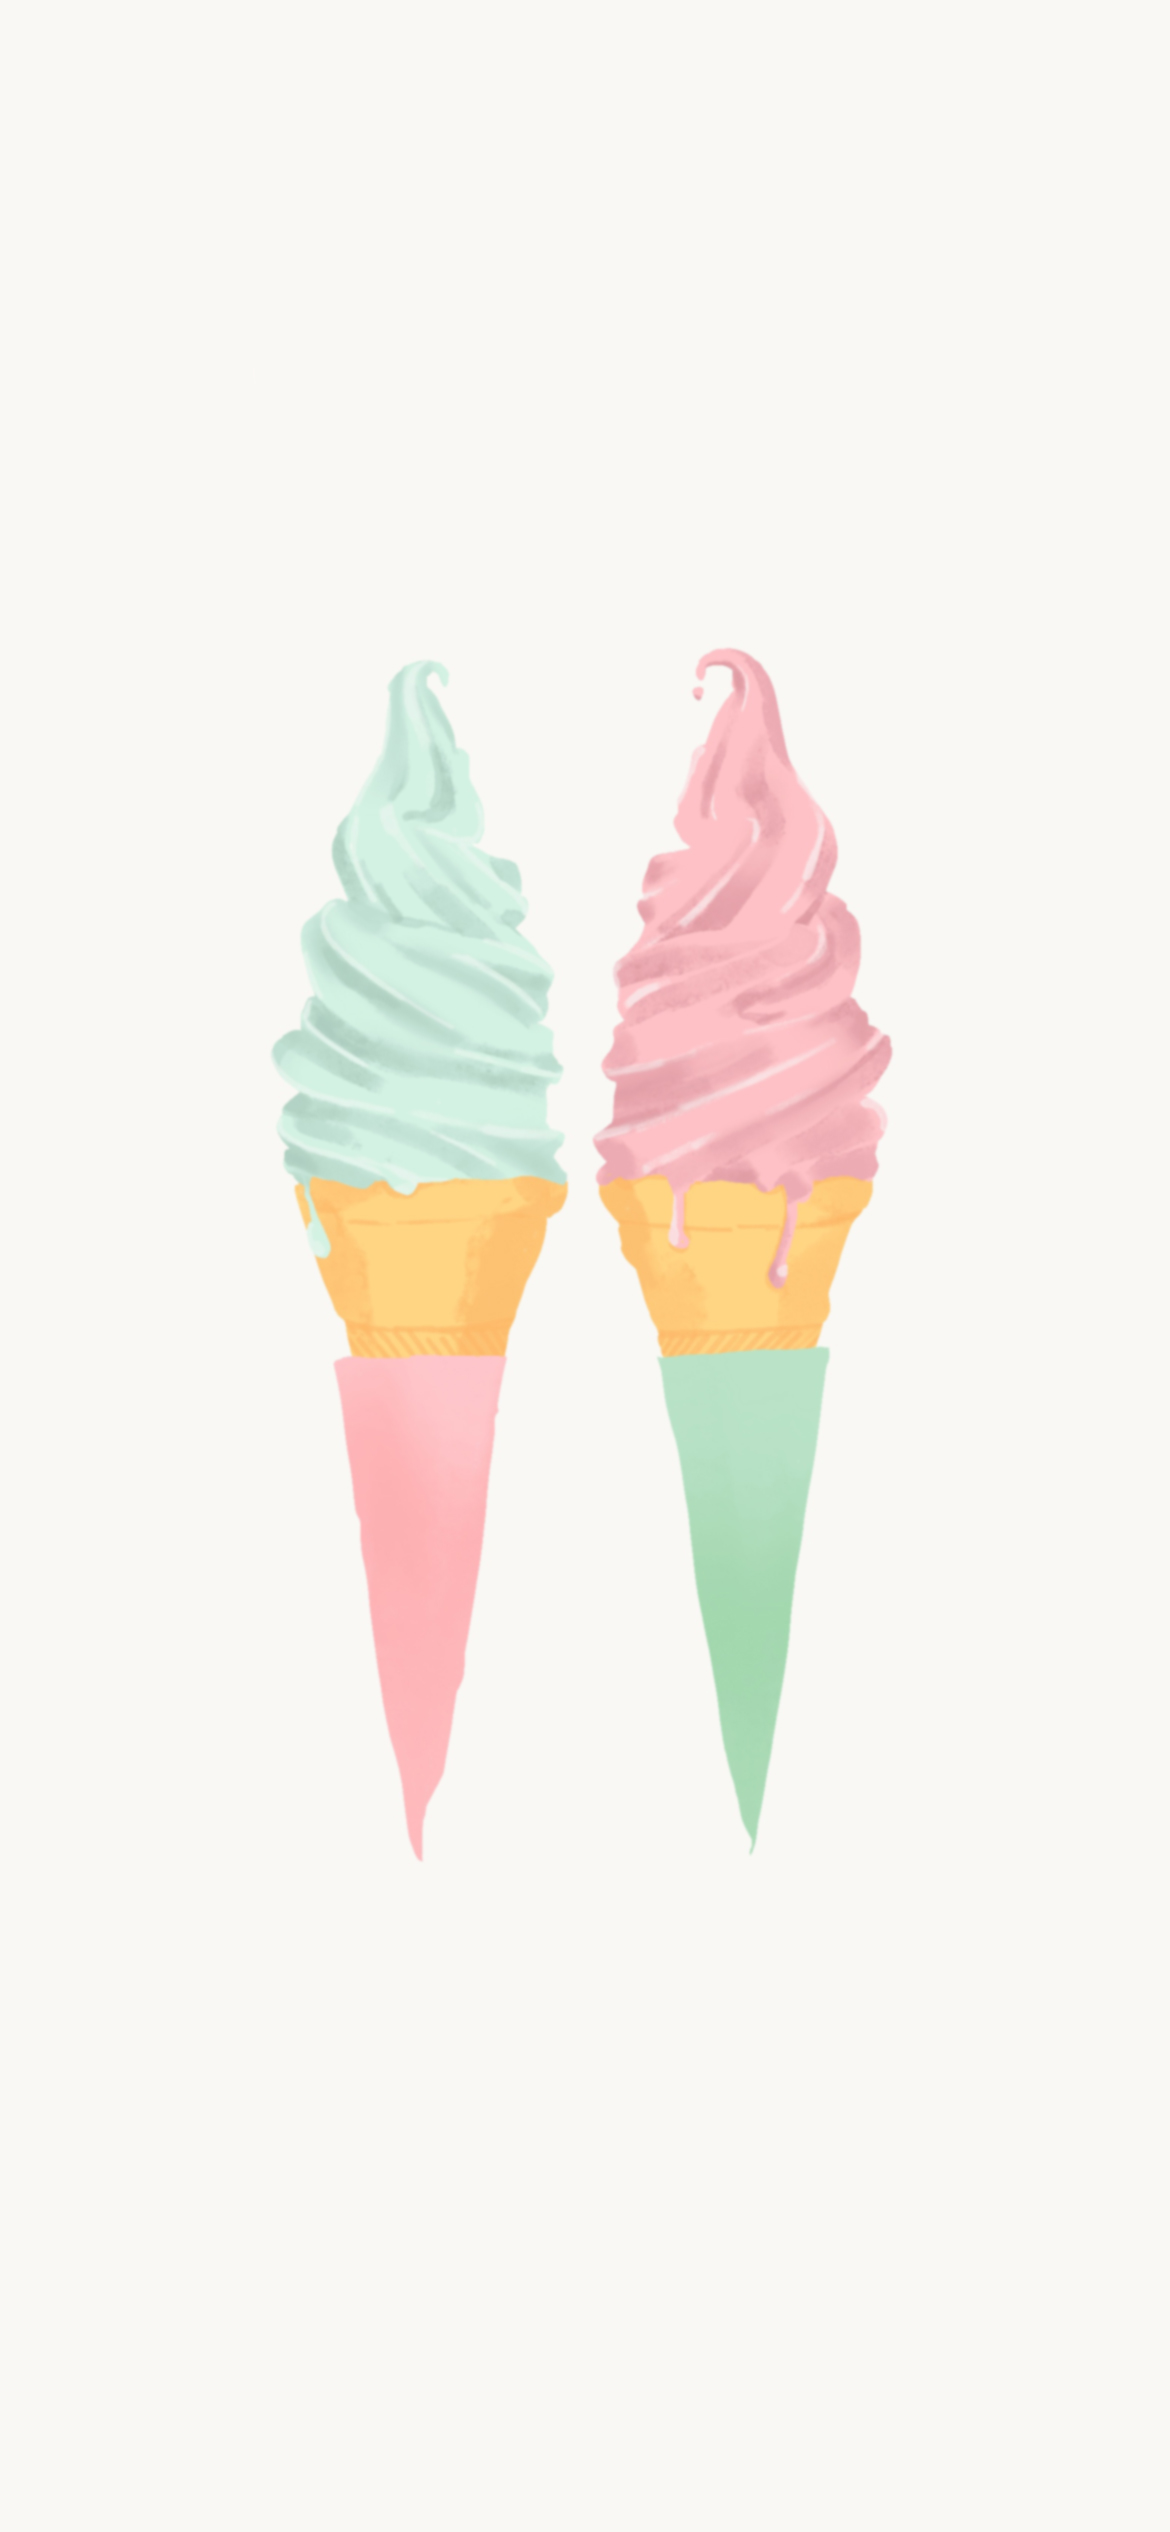 スマホ壁紙/ピンクとミントグリーンのソフトクリーム